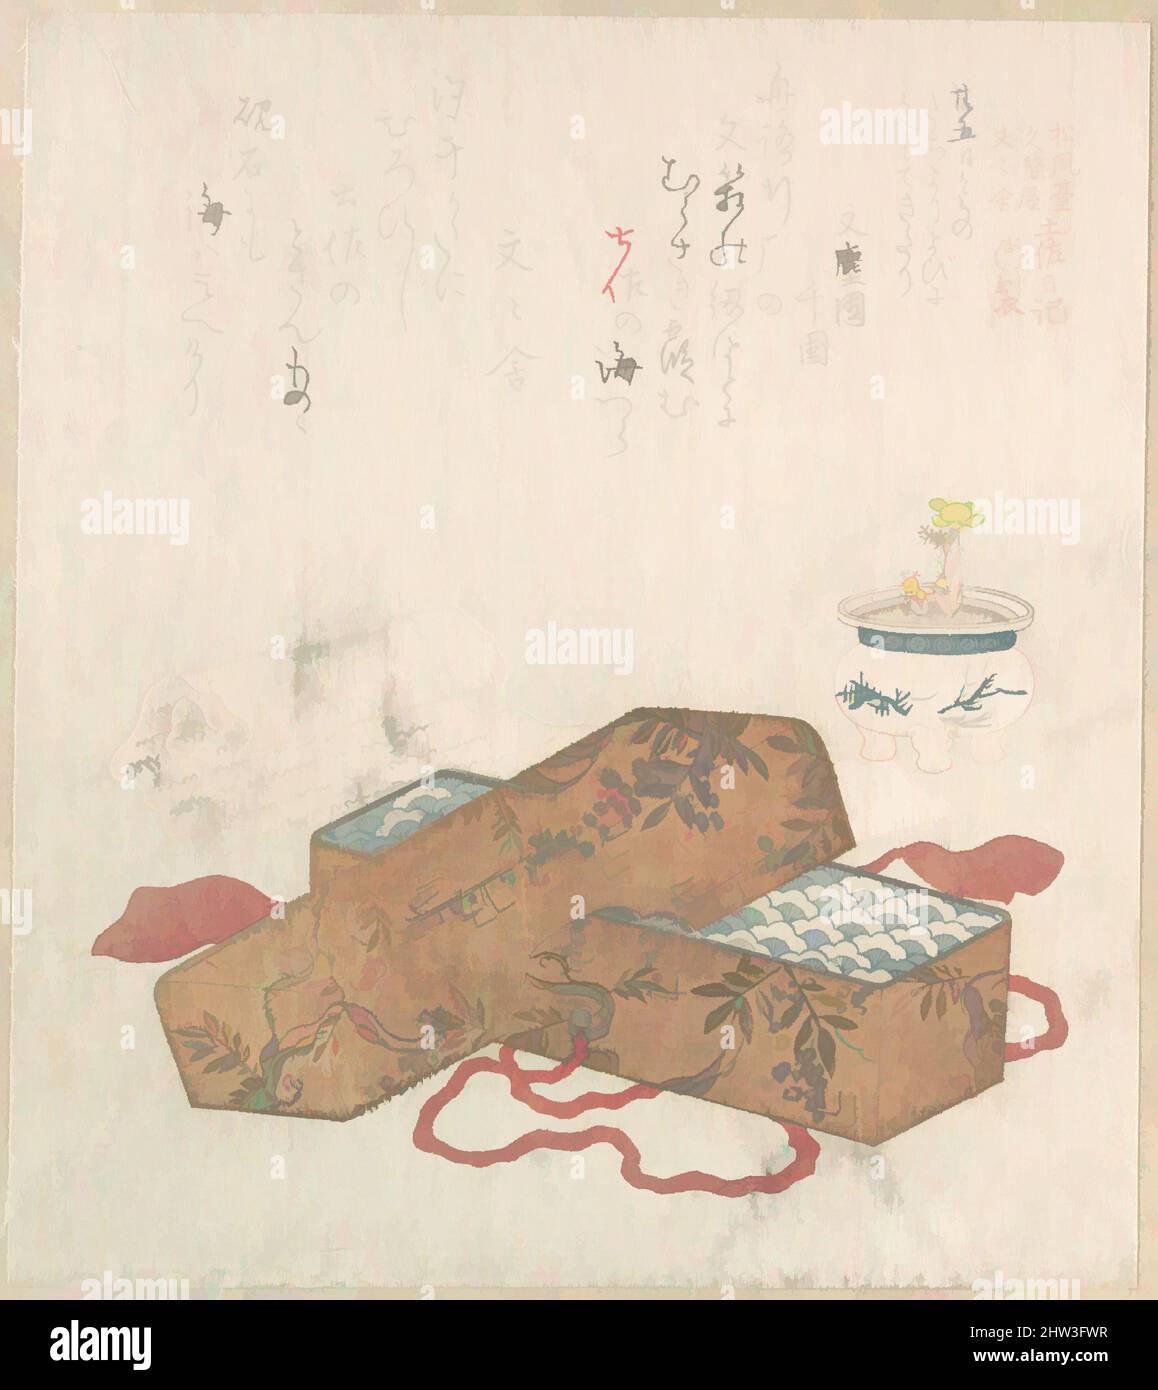 Art inspiré de la boîte aux lettres avec lettre et fleur en pot, époque Edo (1615–1868), 19th siècle, Japon, imprimé polychrome (surimono); encre et couleur sur papier, 8 1/8 x 7 1/4 po. (20,6 x 18,4 cm), Prints, Kubo Shunman (japonais, 1757–1820, oeuvres classiques modernisées par Artotop avec une touche de modernité. Formes, couleur et valeur, impact visuel accrocheur sur l'art émotions par la liberté d'œuvres d'art d'une manière contemporaine. Un message intemporel qui cherche une nouvelle direction créative. Artistes qui se tournent vers le support numérique et créent le NFT Artotop Banque D'Images